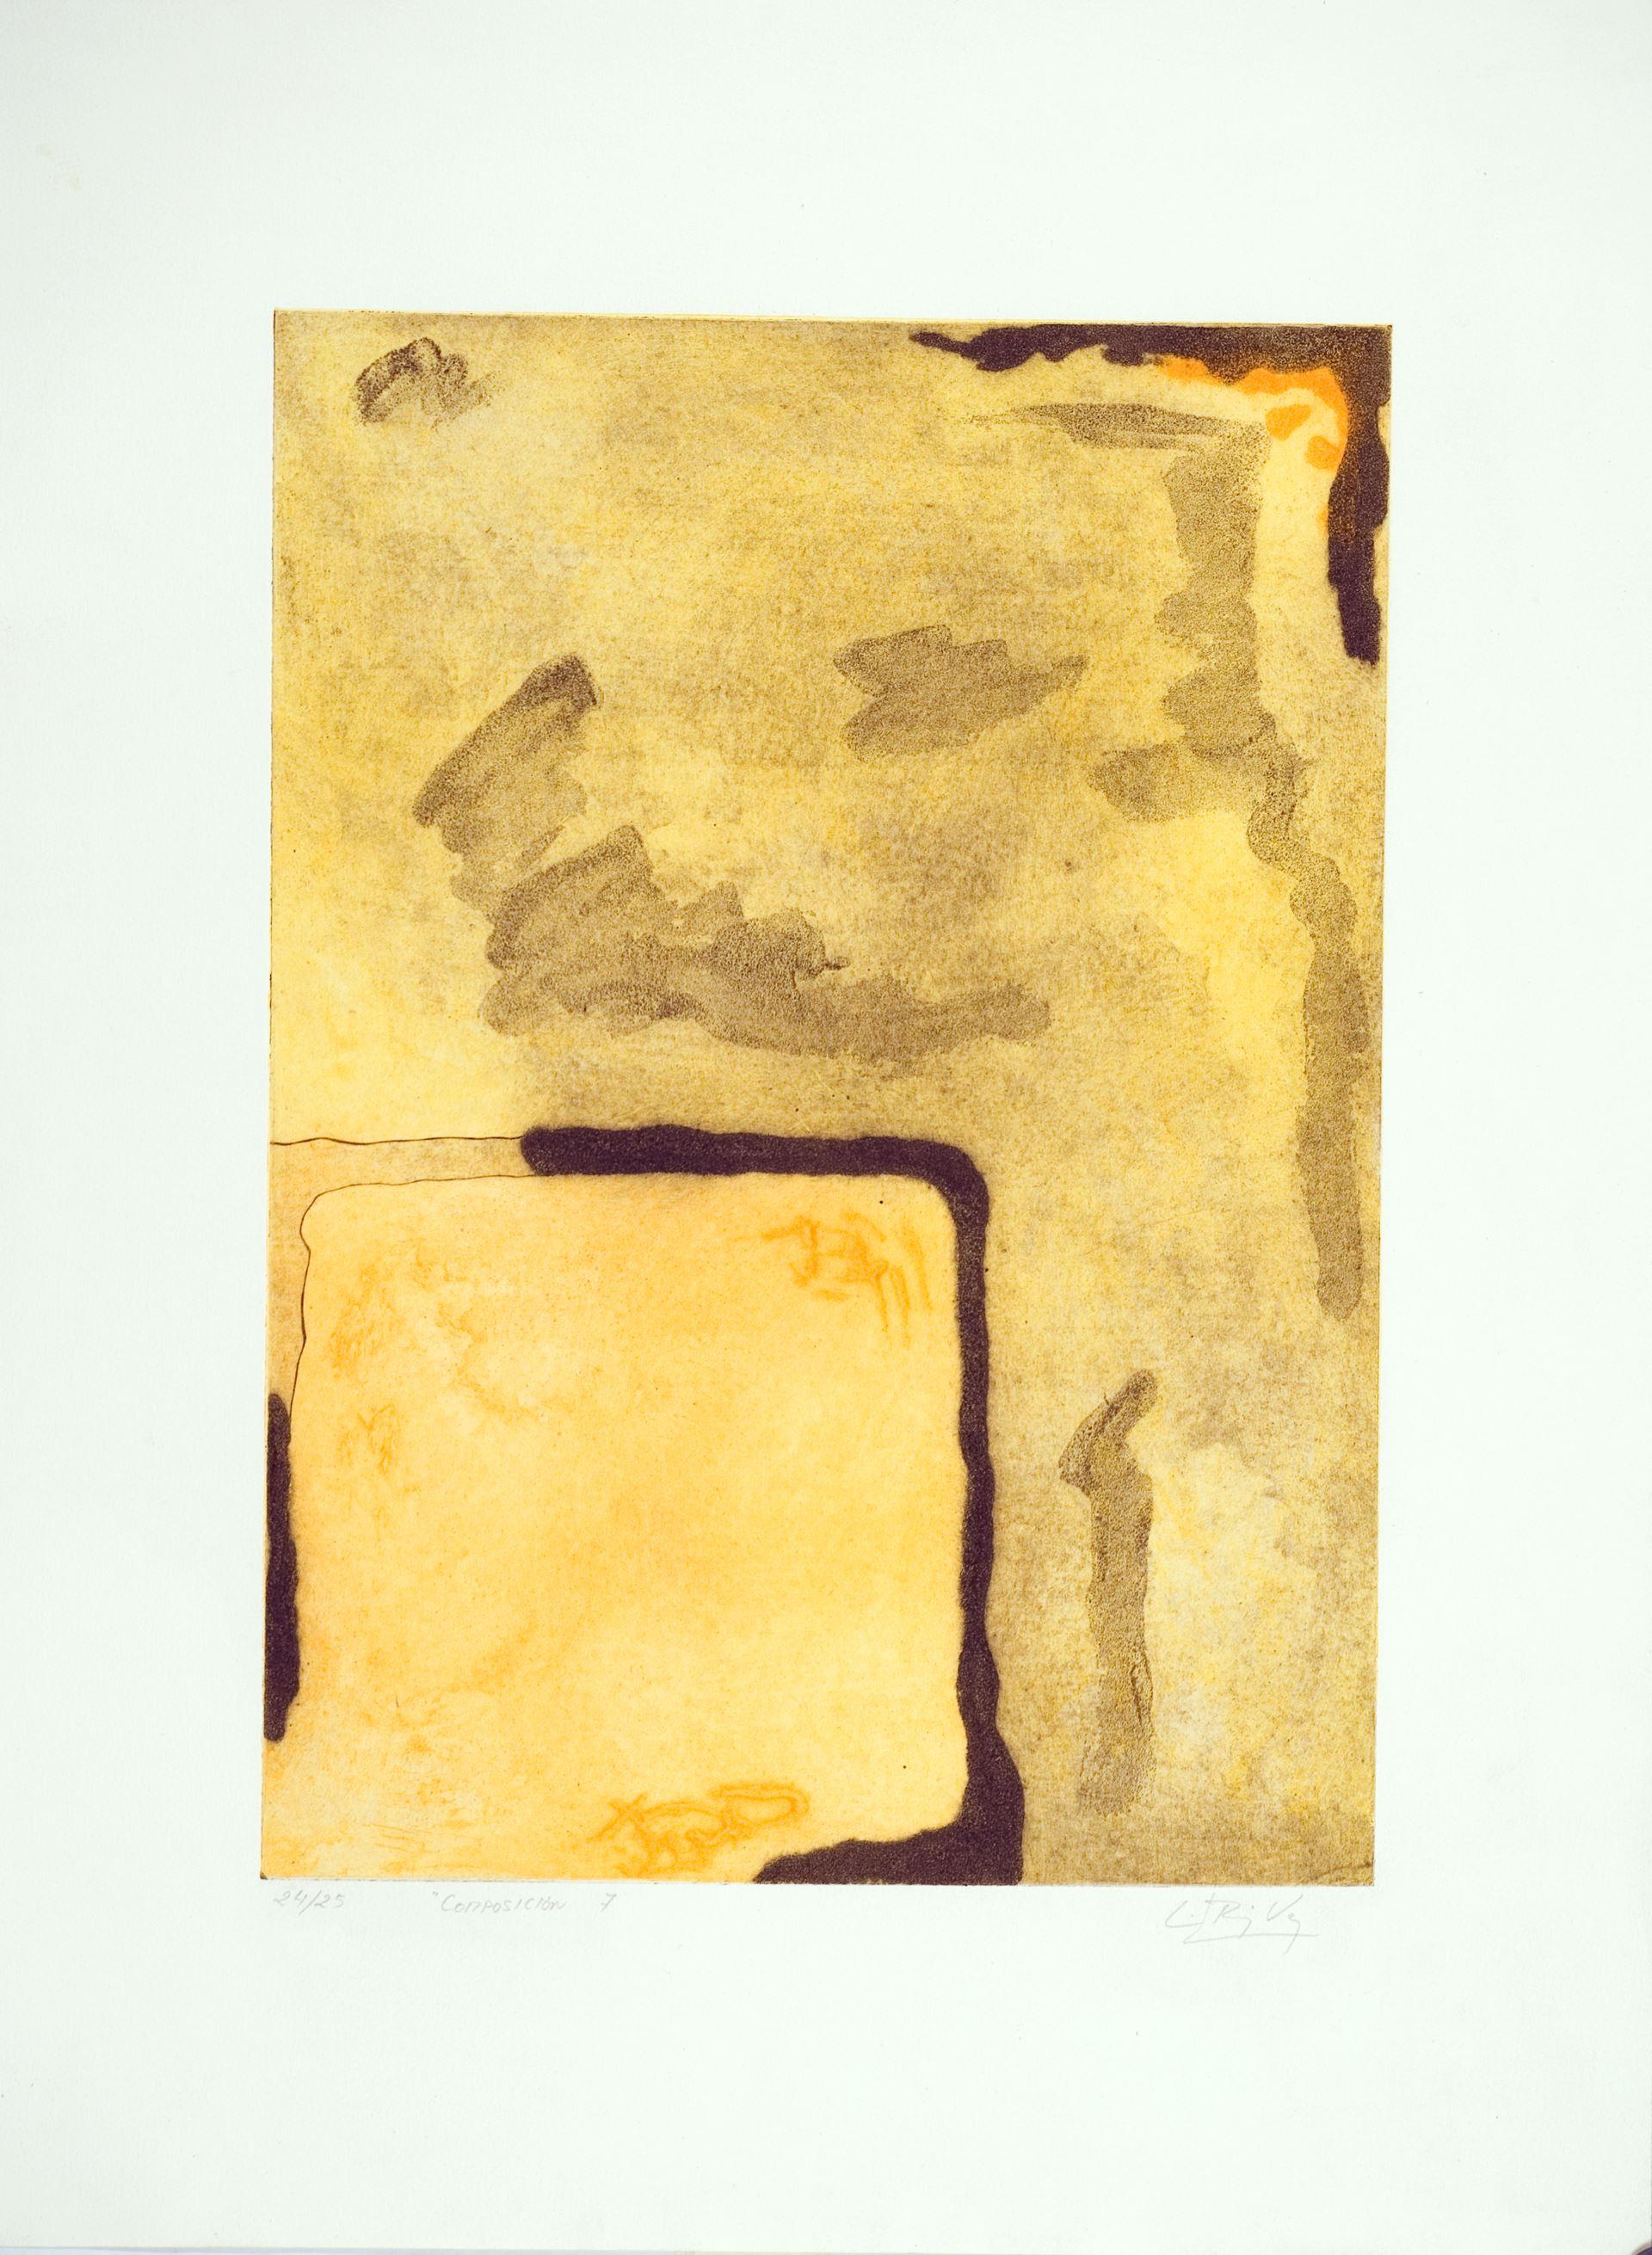 Luis Pérez Vega (Spanien, 1976)
Komposition VII", 1995
Gravur auf Papier
27,6 x 19,7 Zoll (70 x 50 cm)
Auflage von 25 Stück
ID: PER1275-010-025
Vom Autor handsigniert